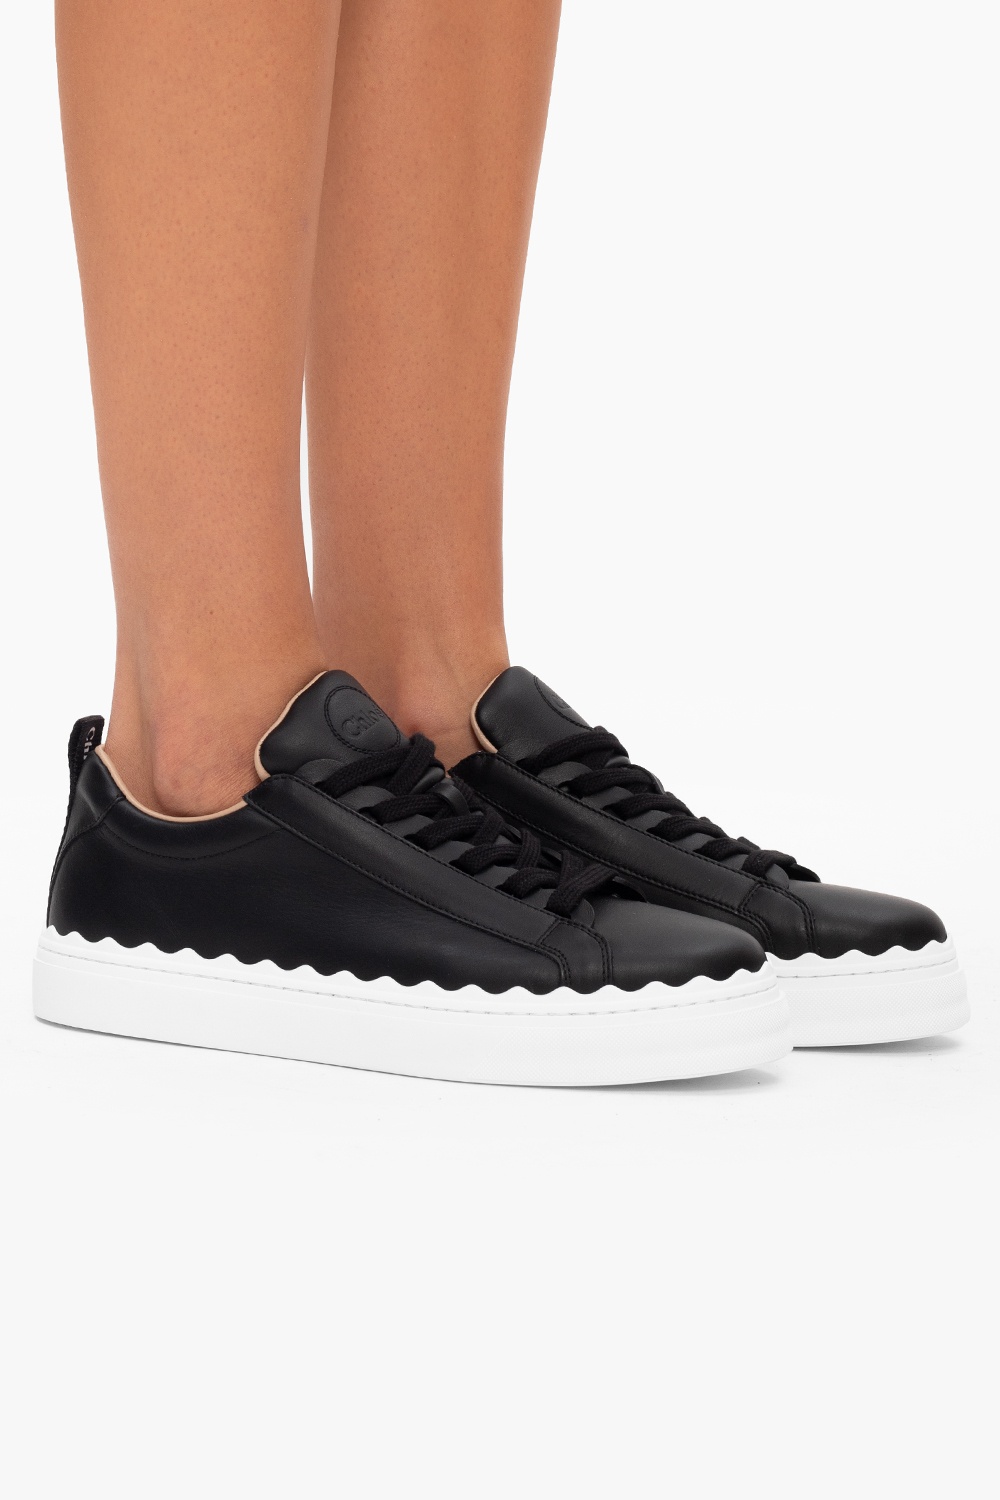 Chloé 'Lauren' sneakers | Women's Shoes | IetpShops